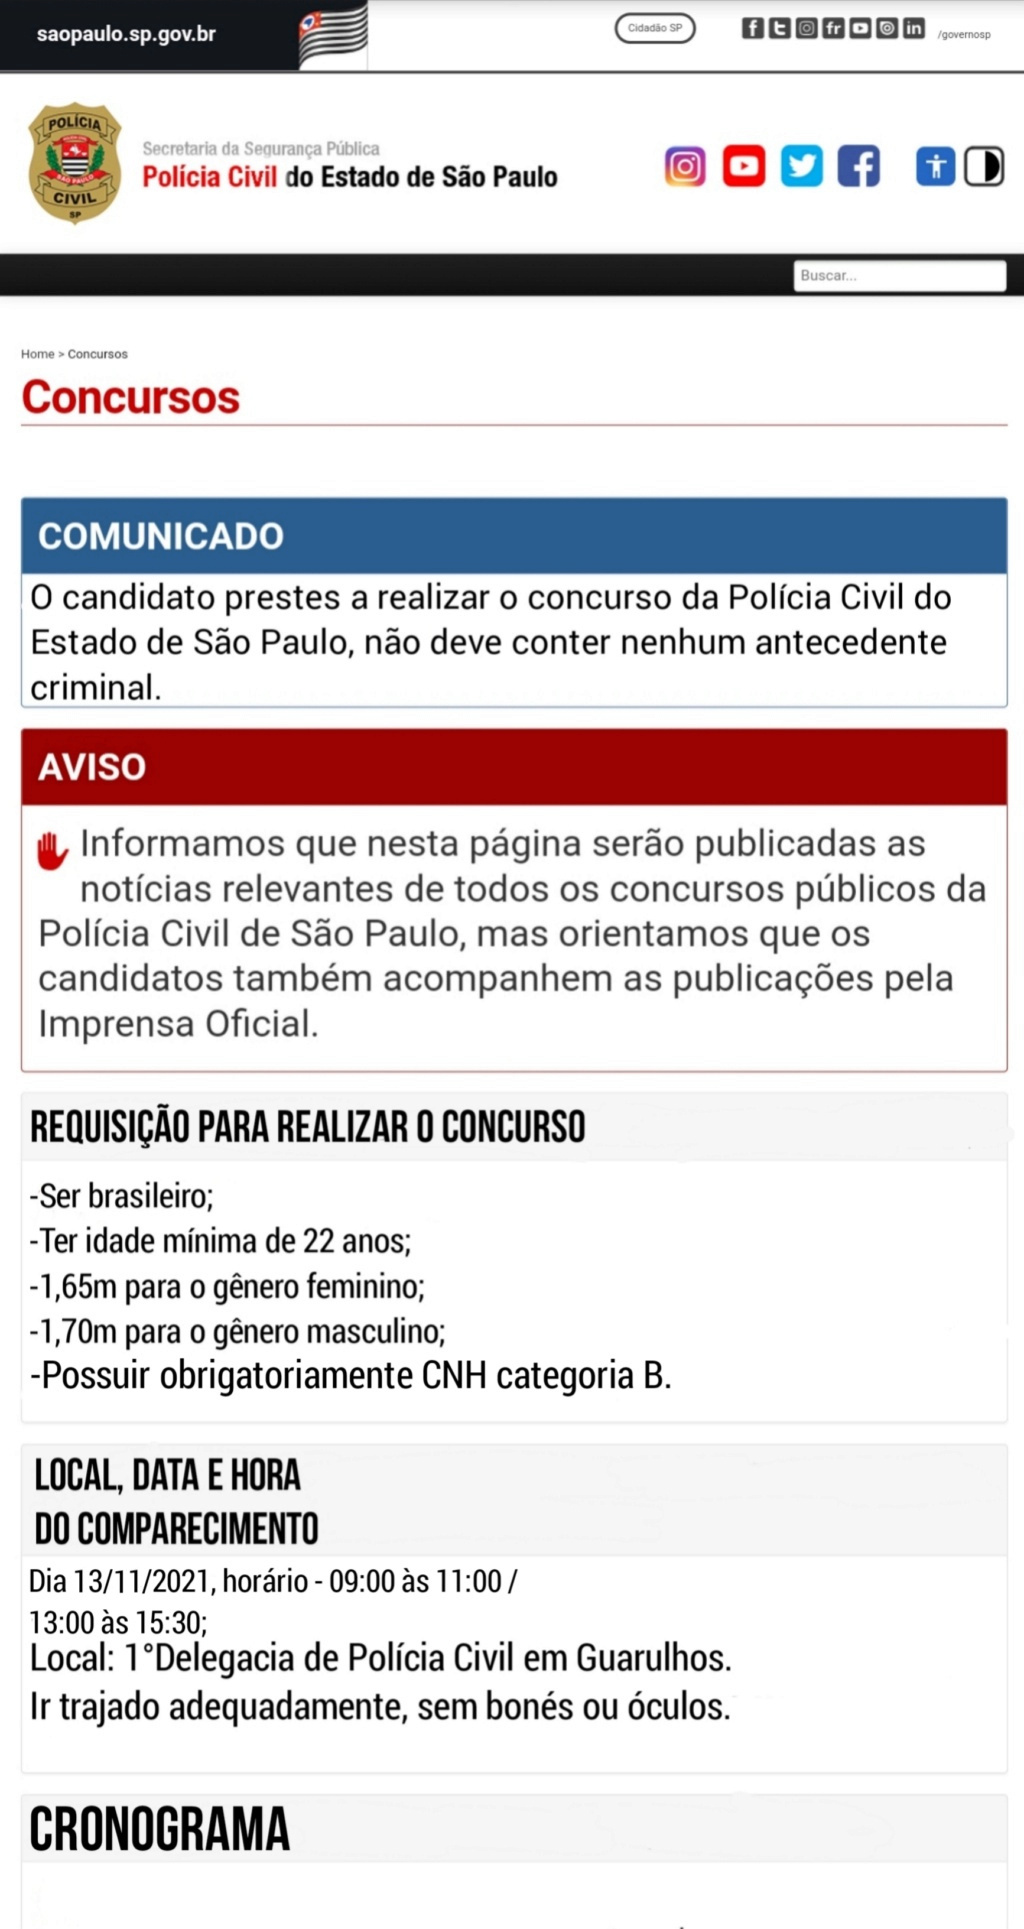 Policia Civil do Estado de São Paulo - "Servir & Proteger" - Página 2 16365110